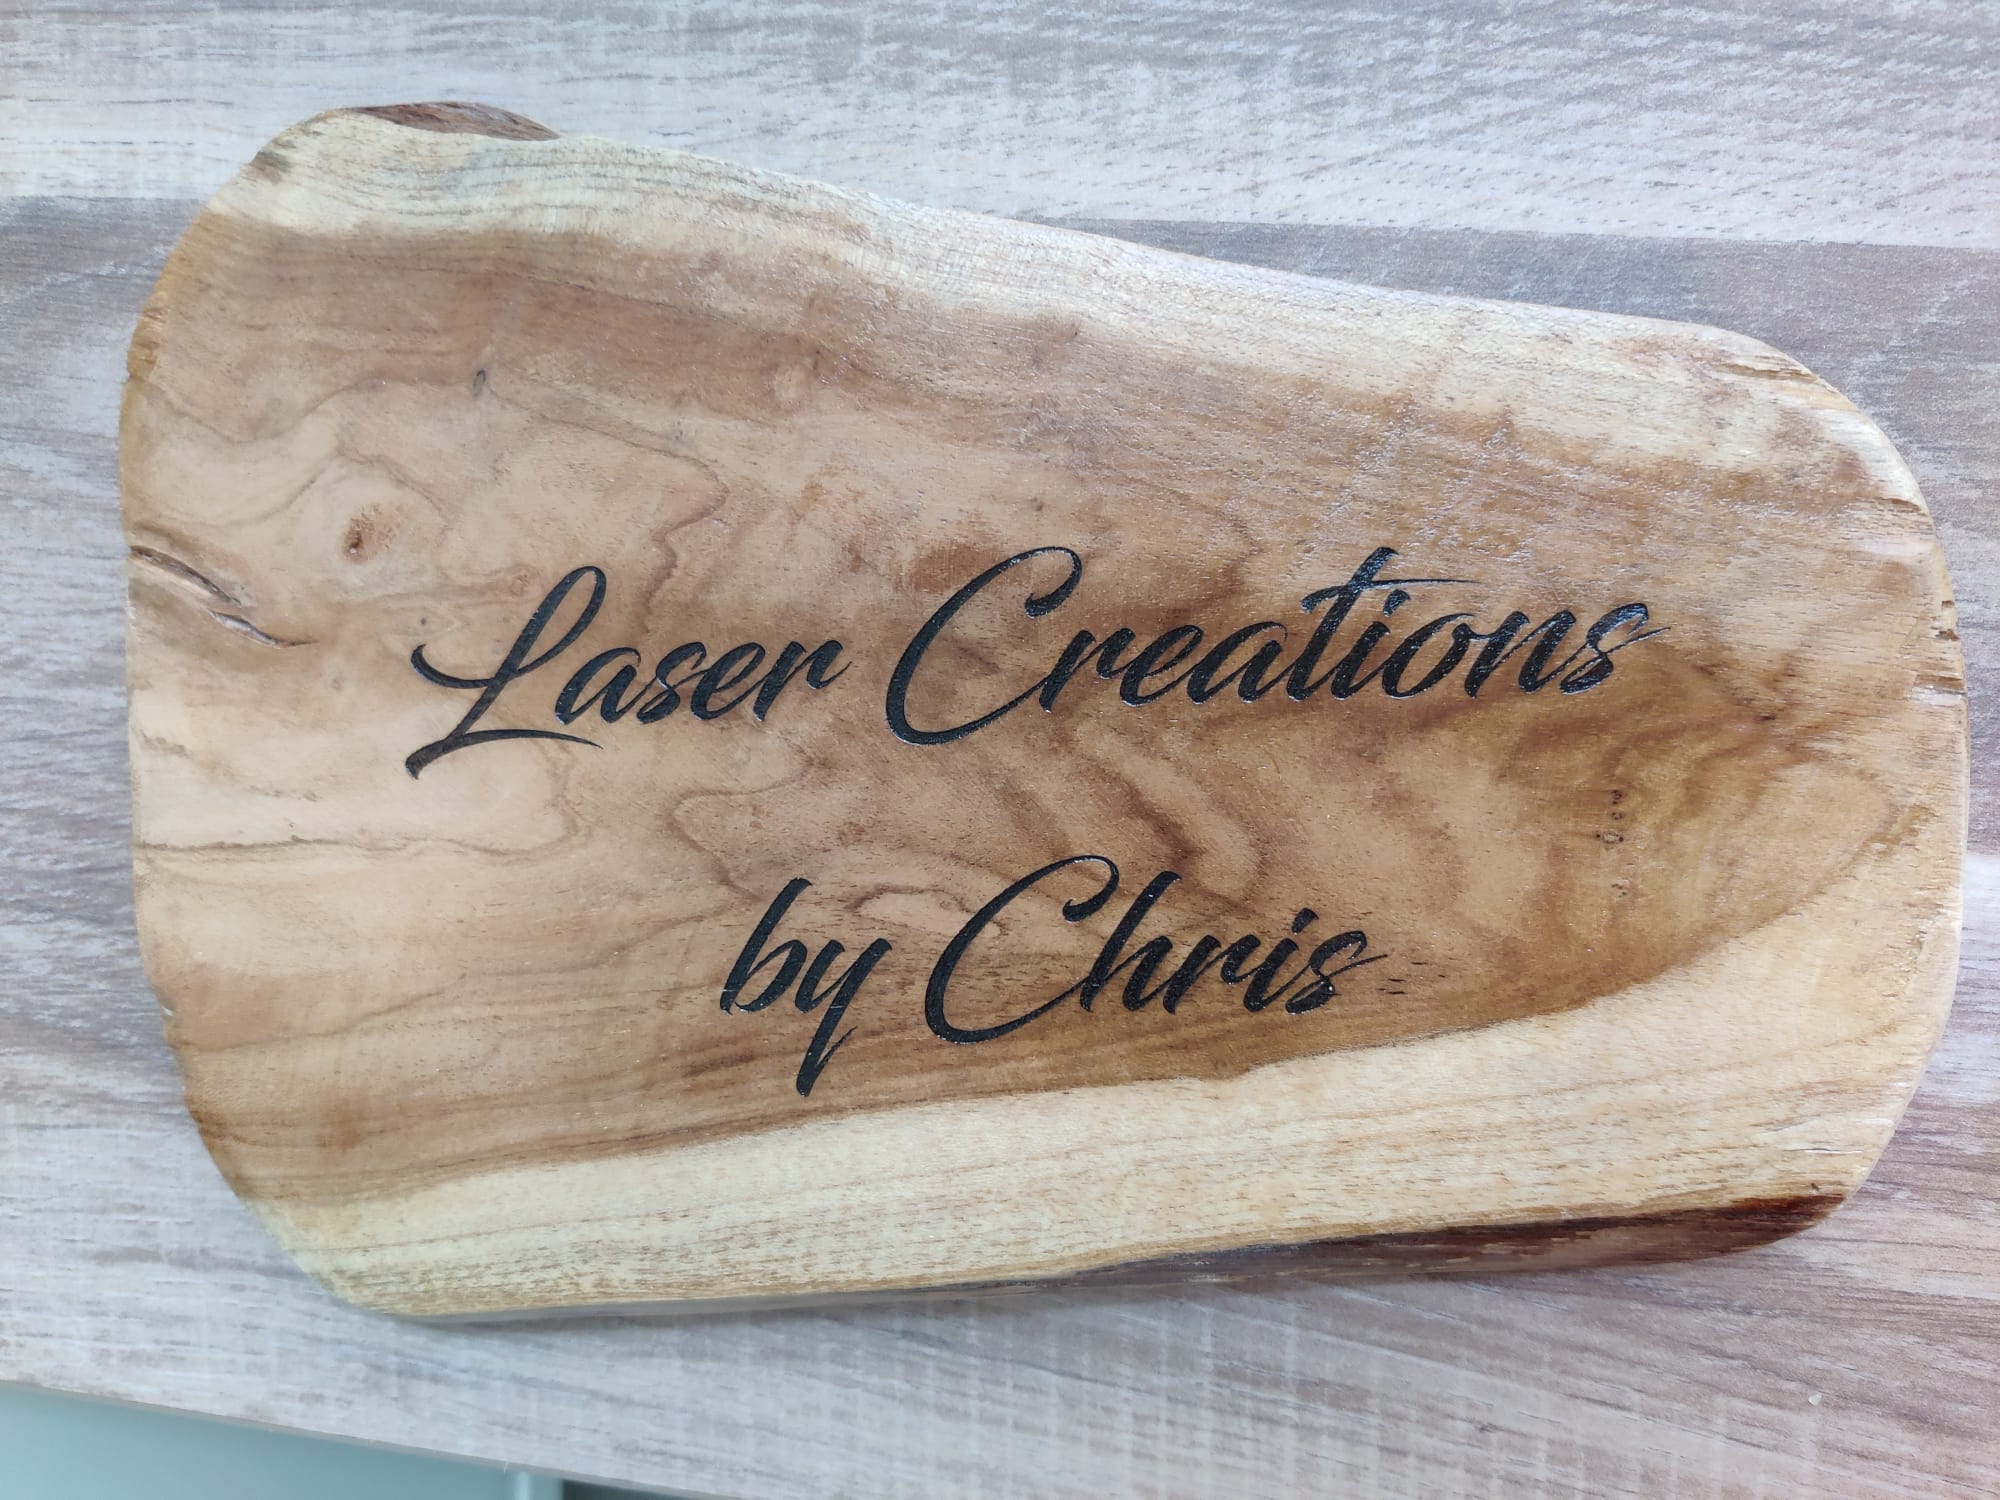 hebben zich vergist Memo beven Teak houten bordje met eigen tekst - Laser Creations by Chris